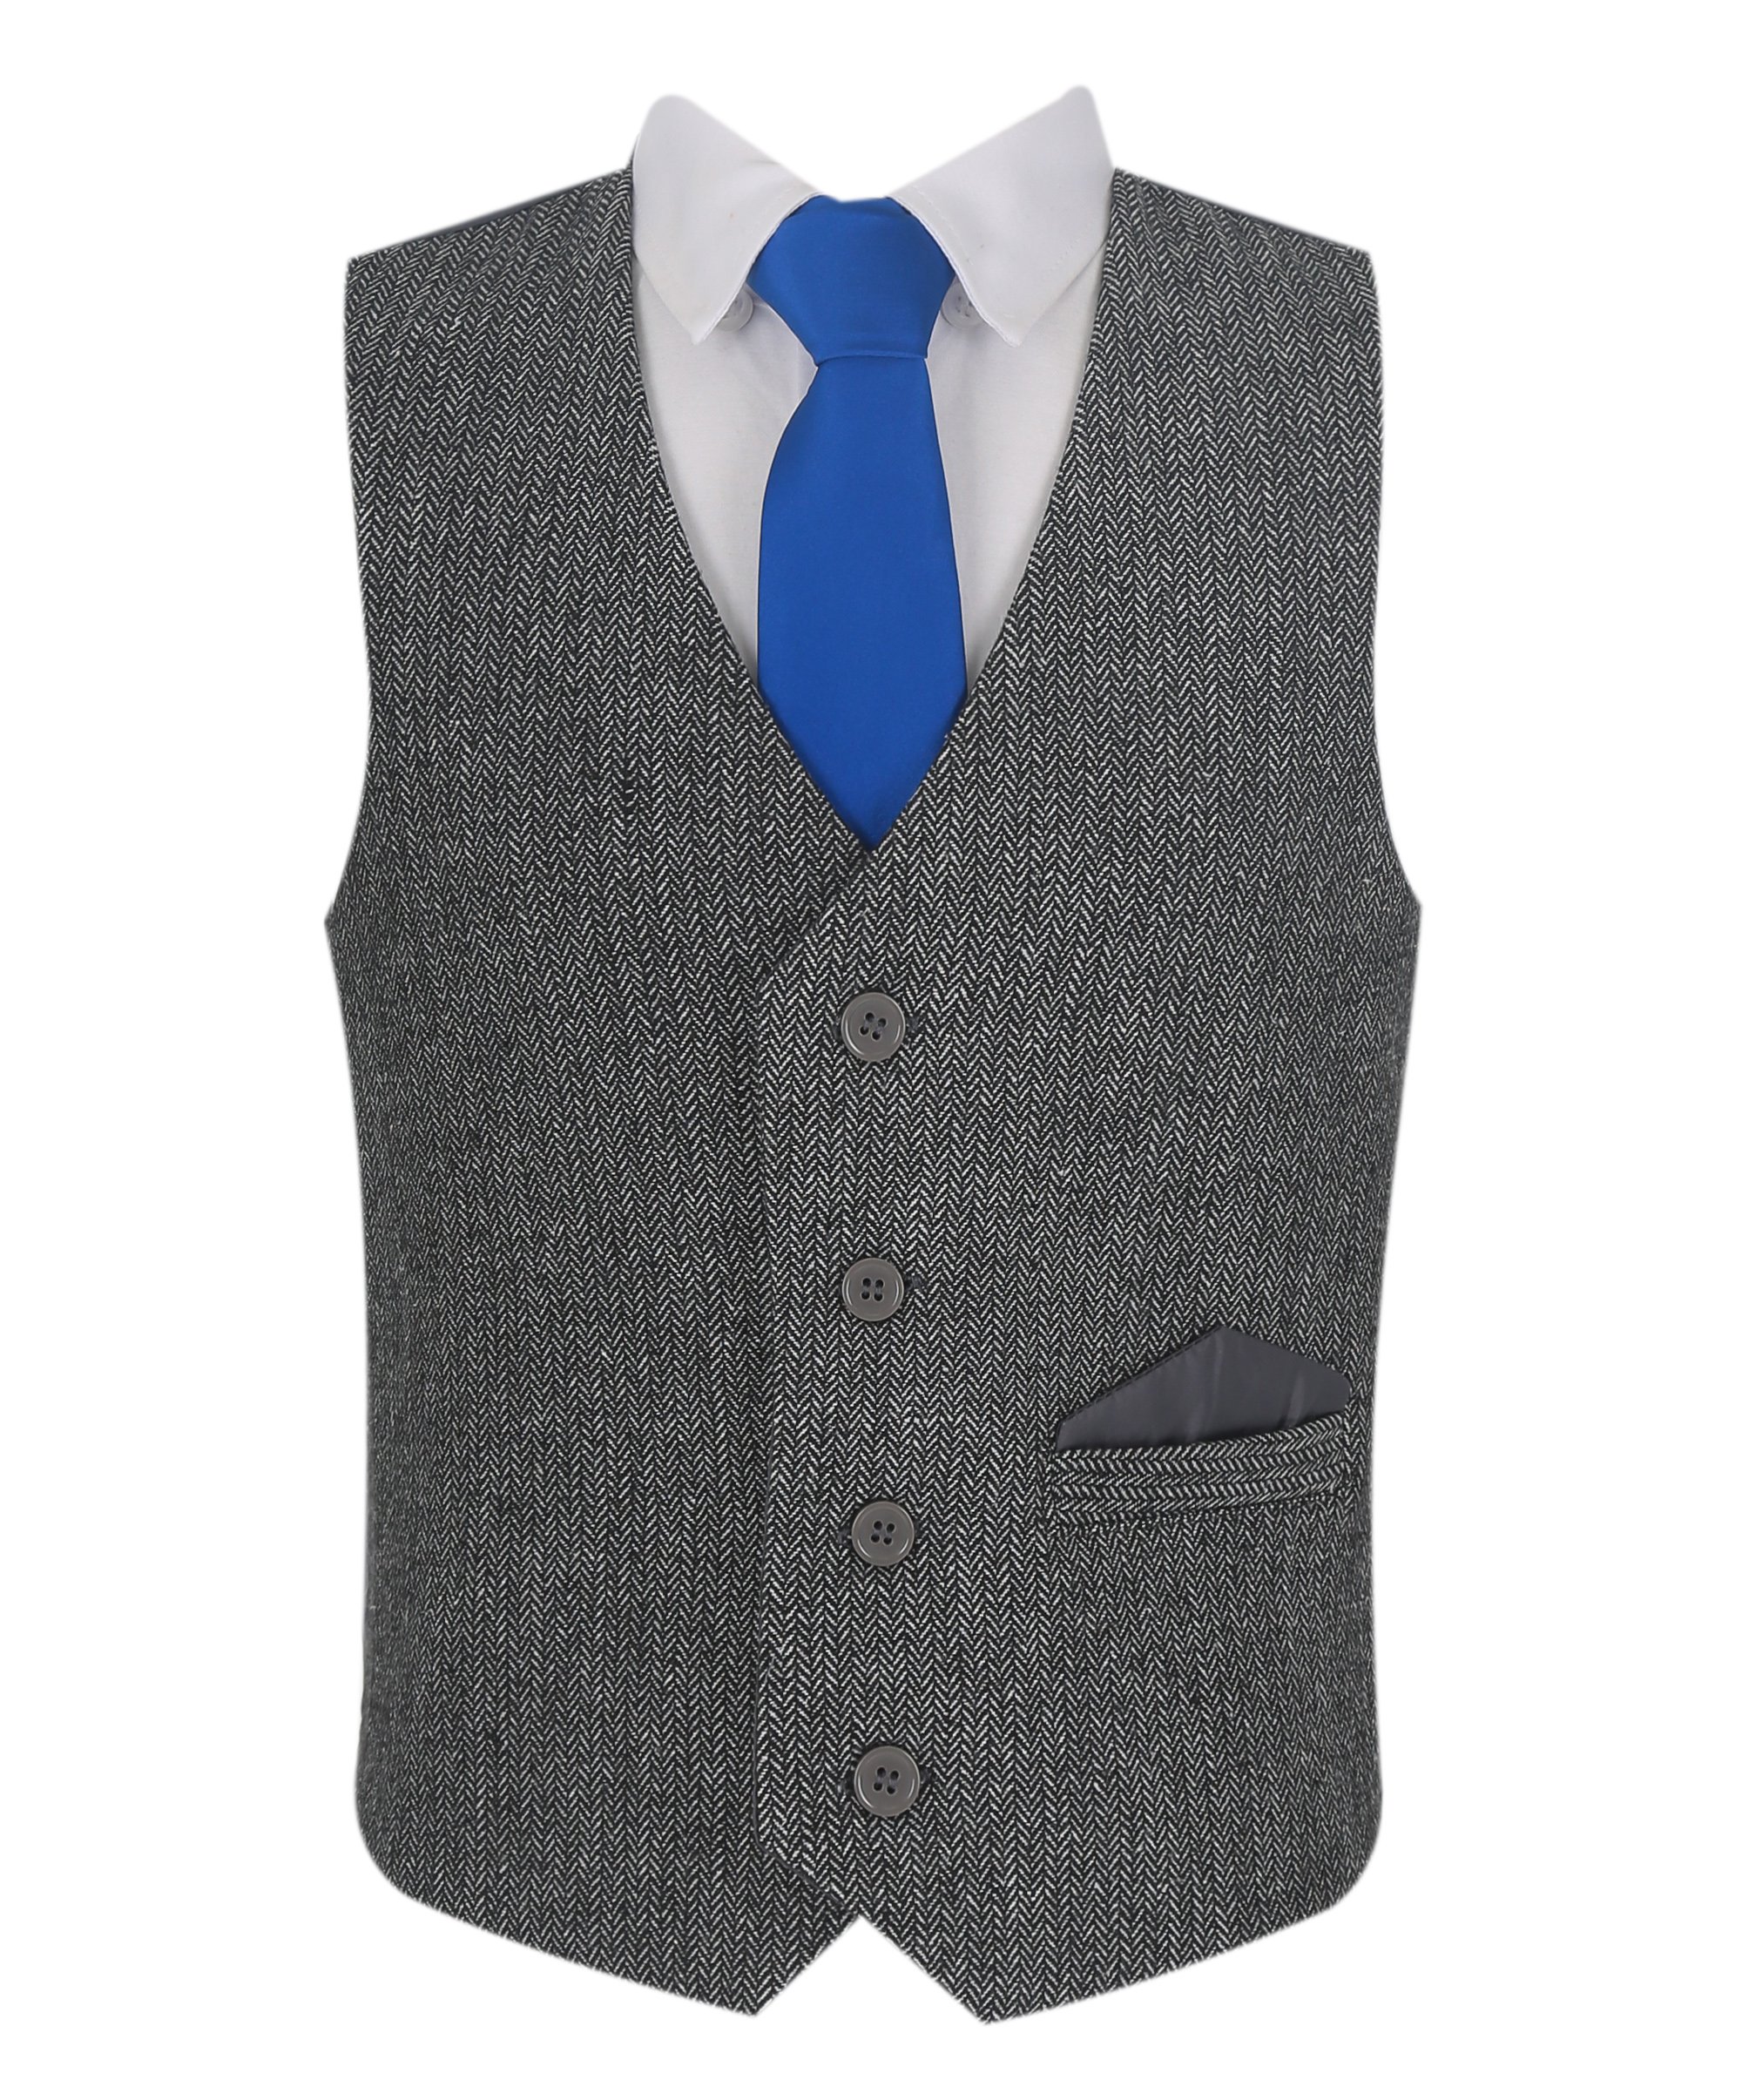 Boys Herringbone Tweed Vest Suit Set